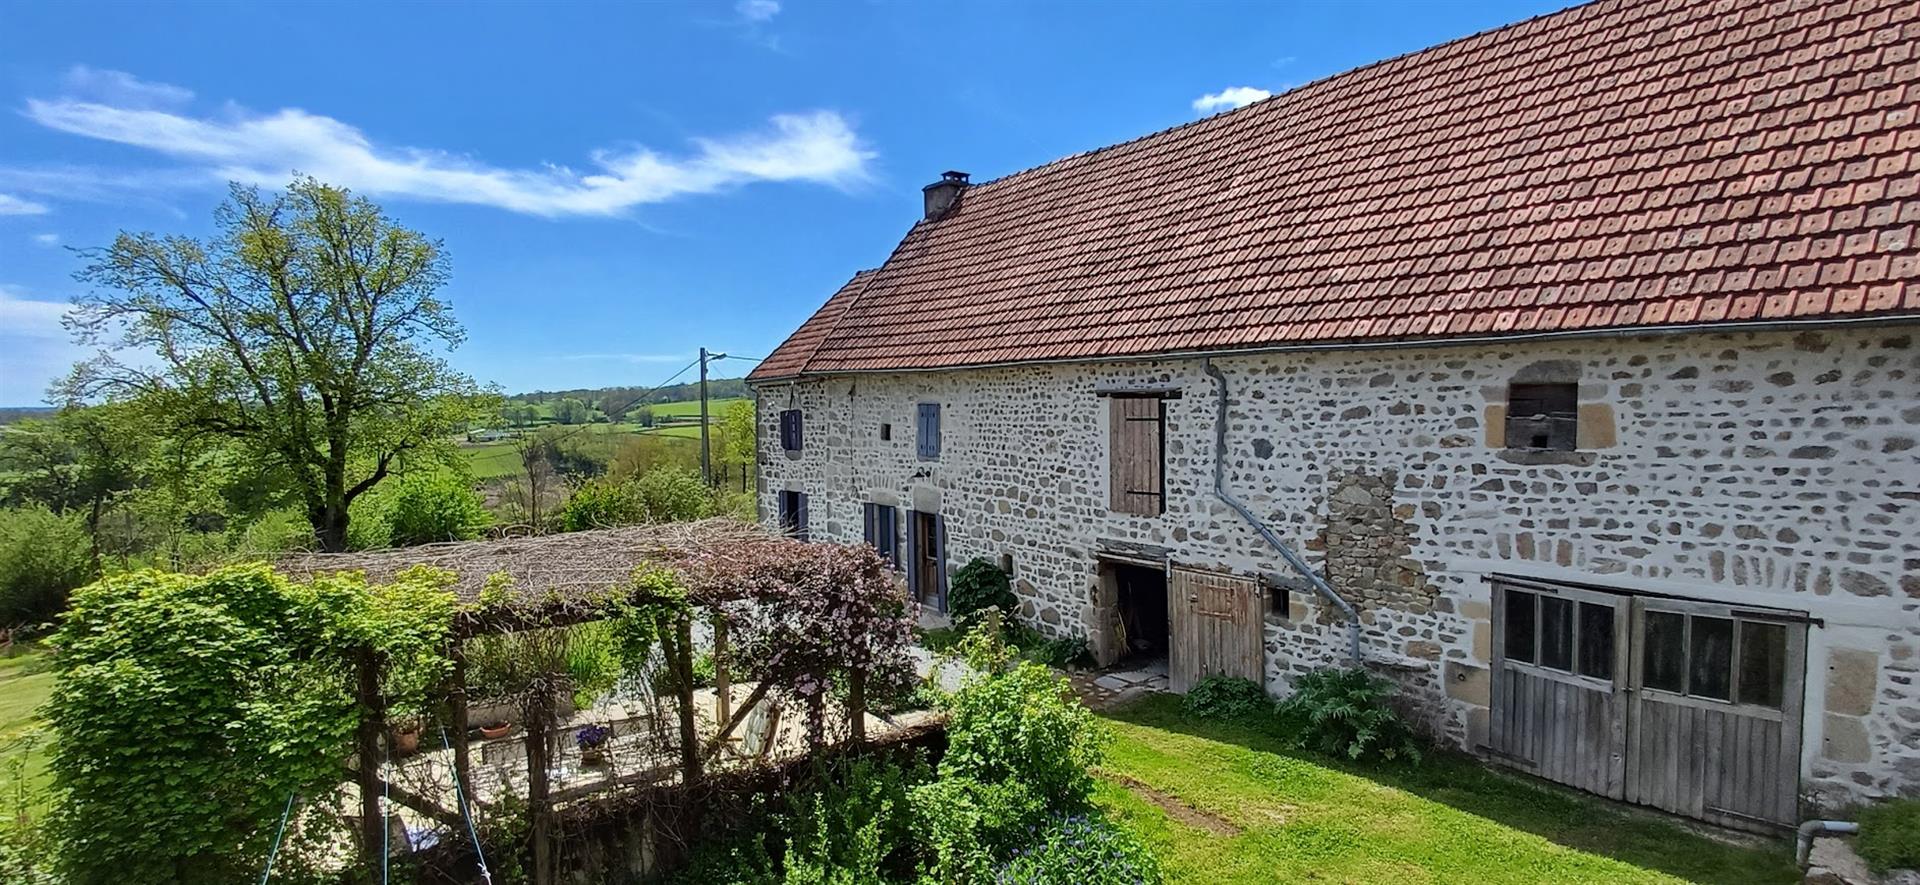 A vendre dans le Puy de Dôme, région Auvergne, près de Biollet, une belle maison avec dépendances et